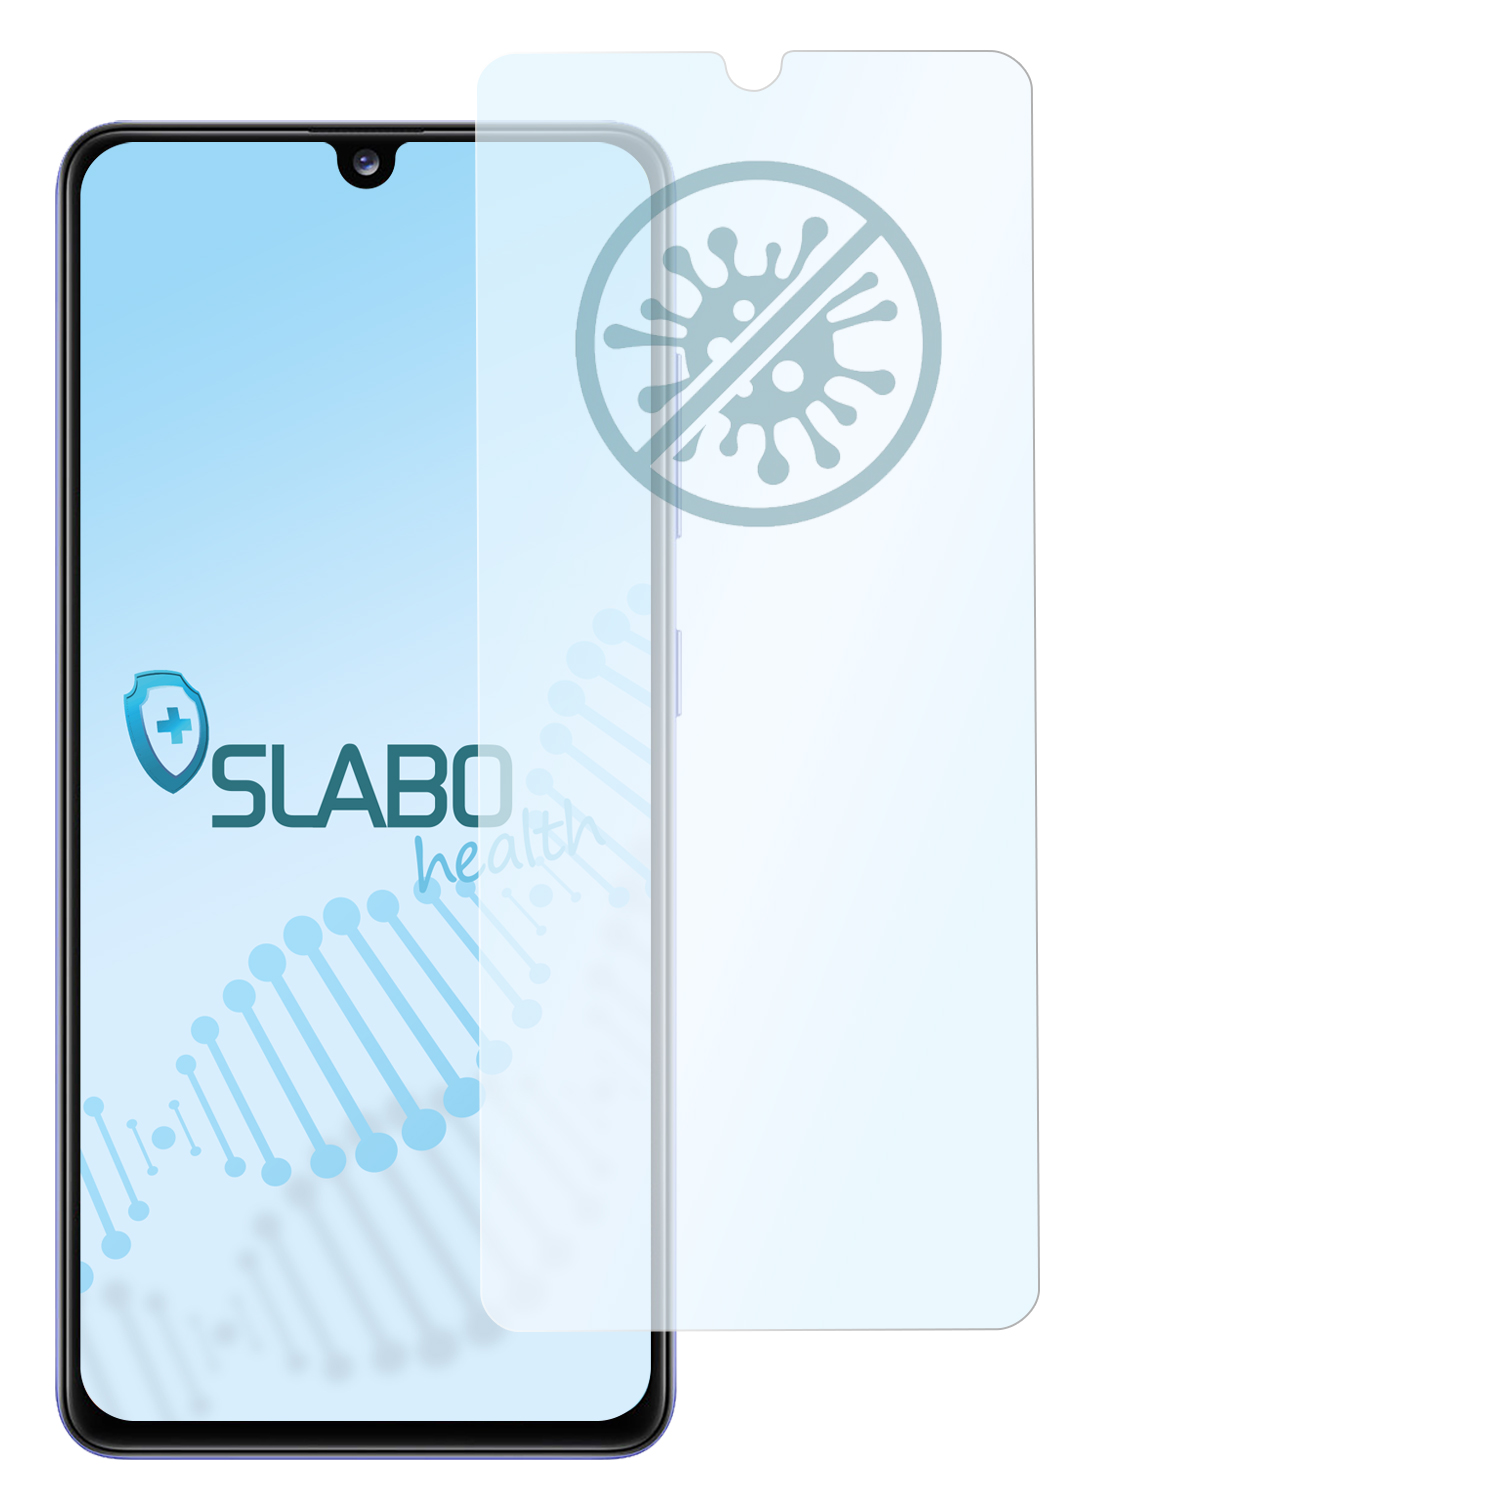 Samsung A41) antibakterielle Displayschutz(für SLABO Galaxy Hybridglasfolie flexible